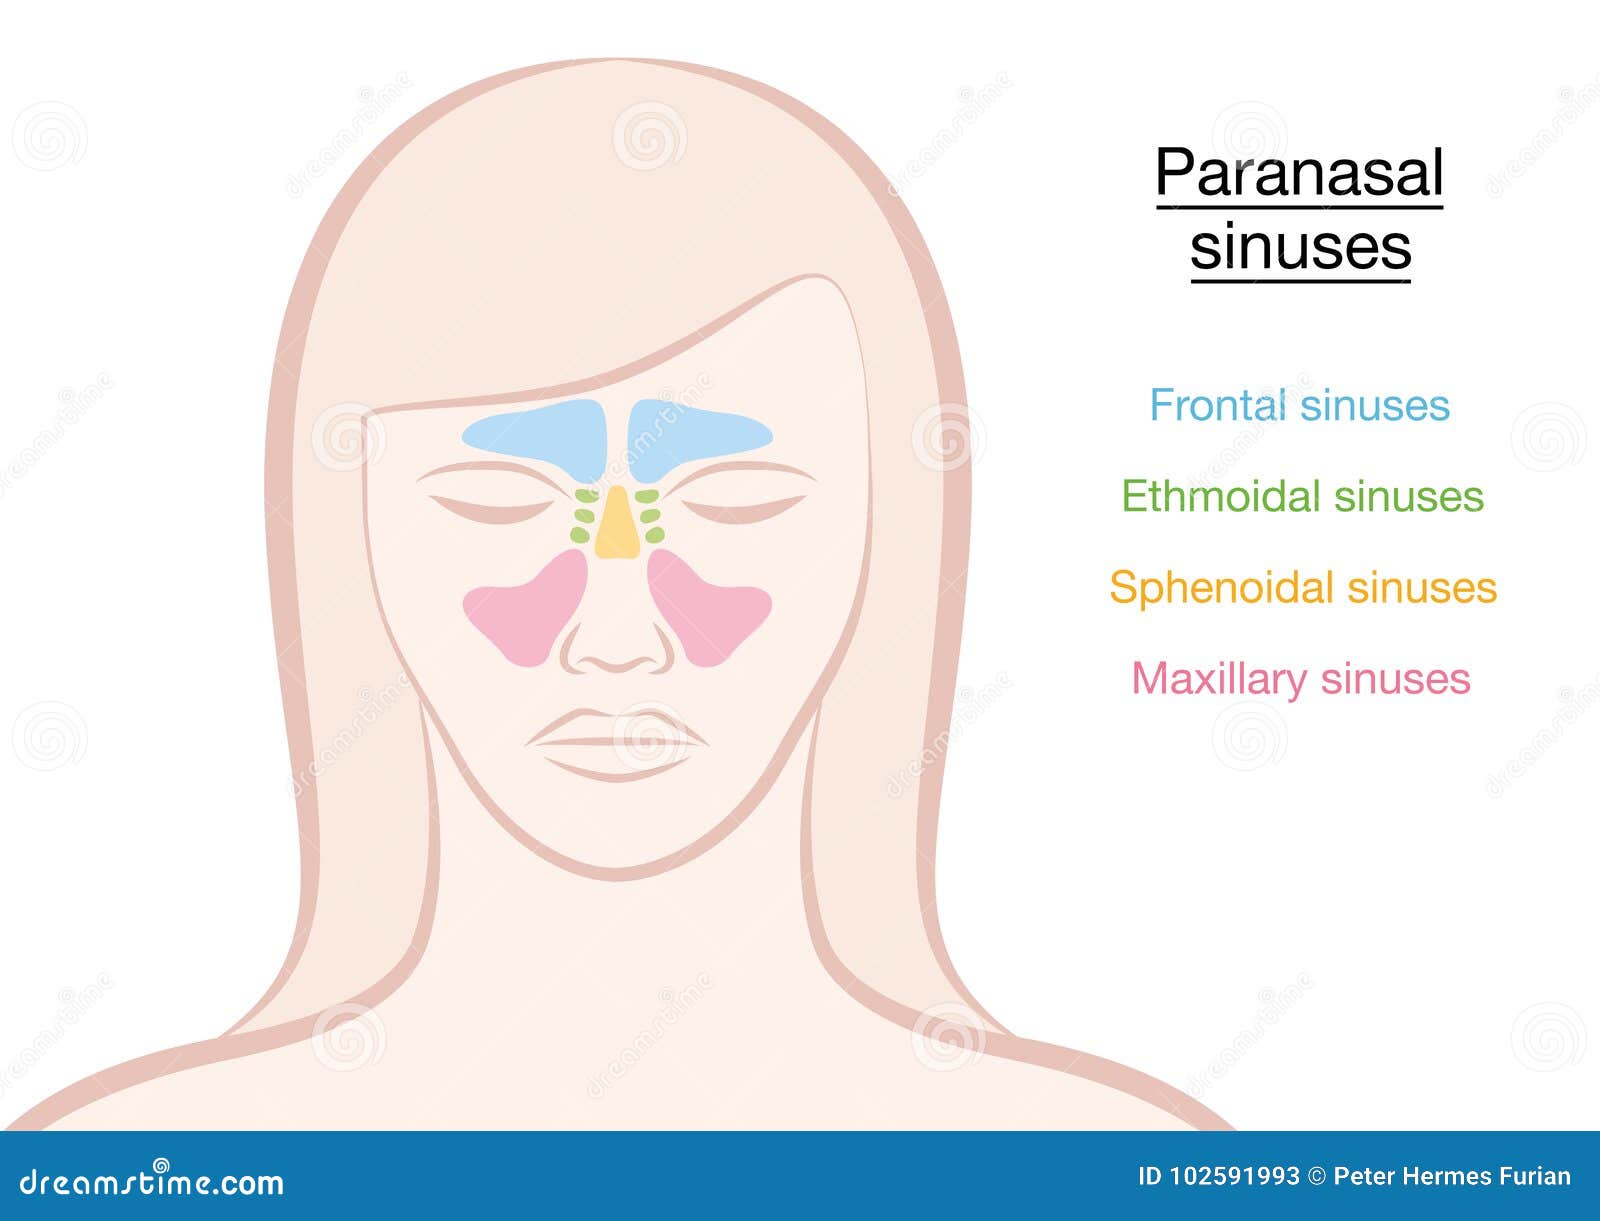 paranasal sinuses woman